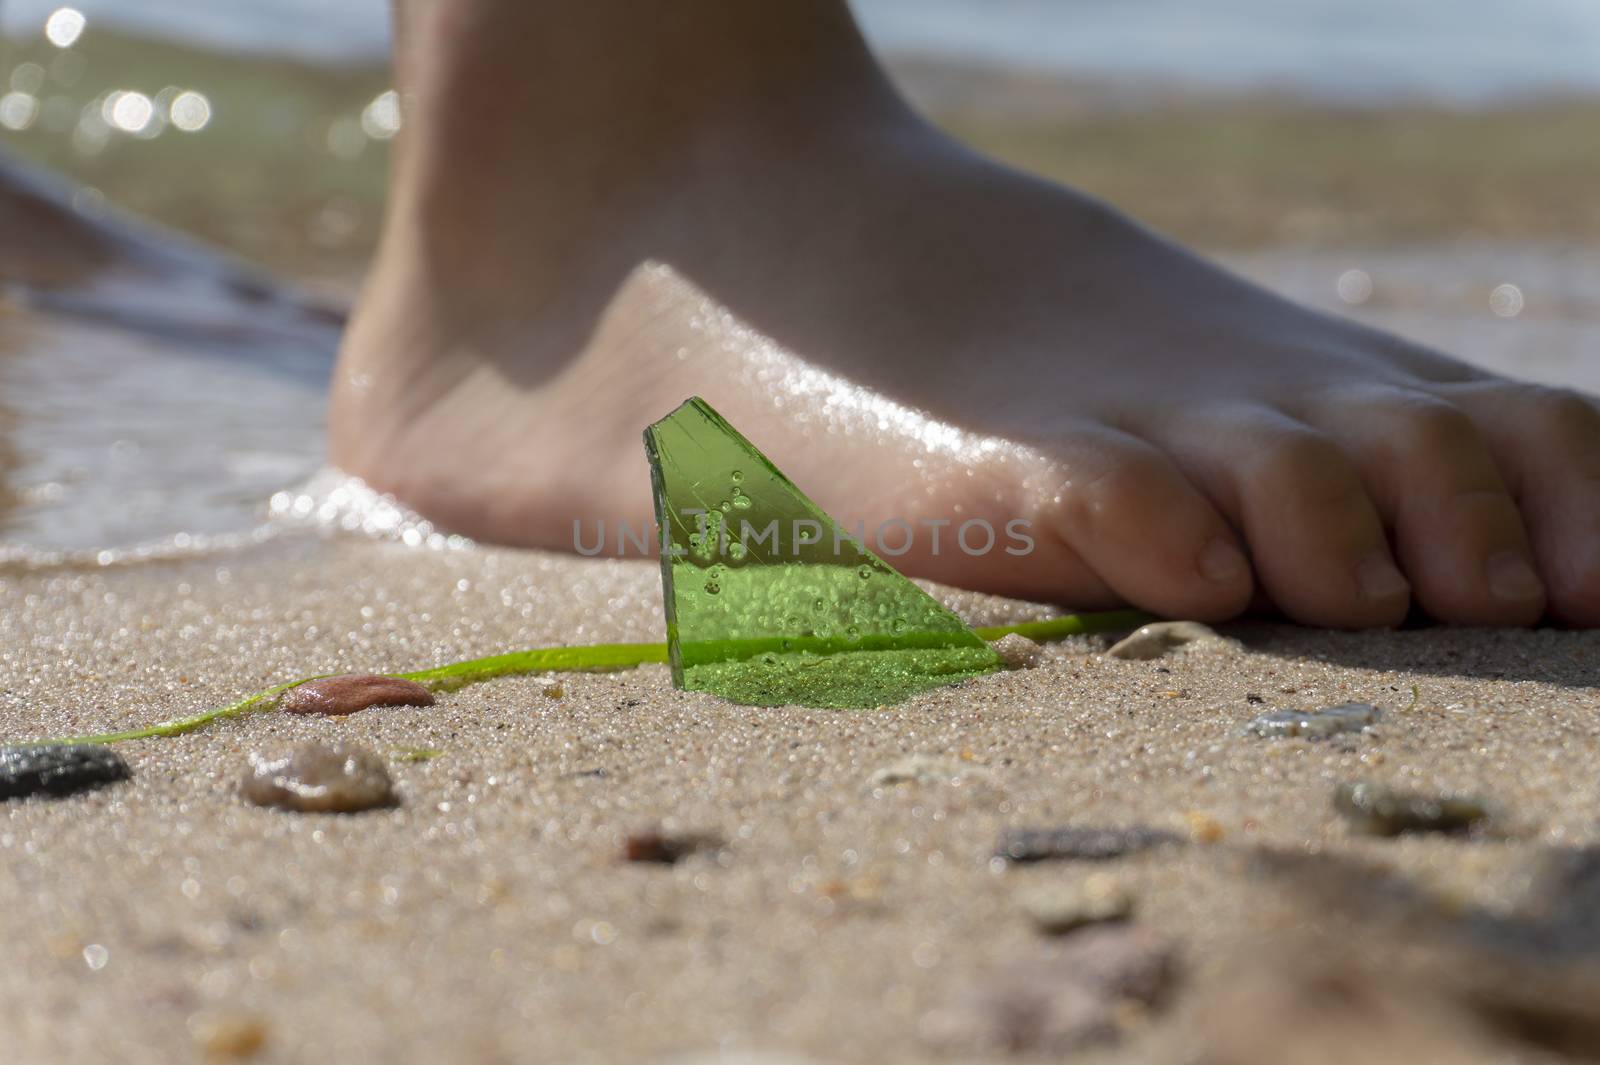 Danger of broken glass on a beach by NetPix